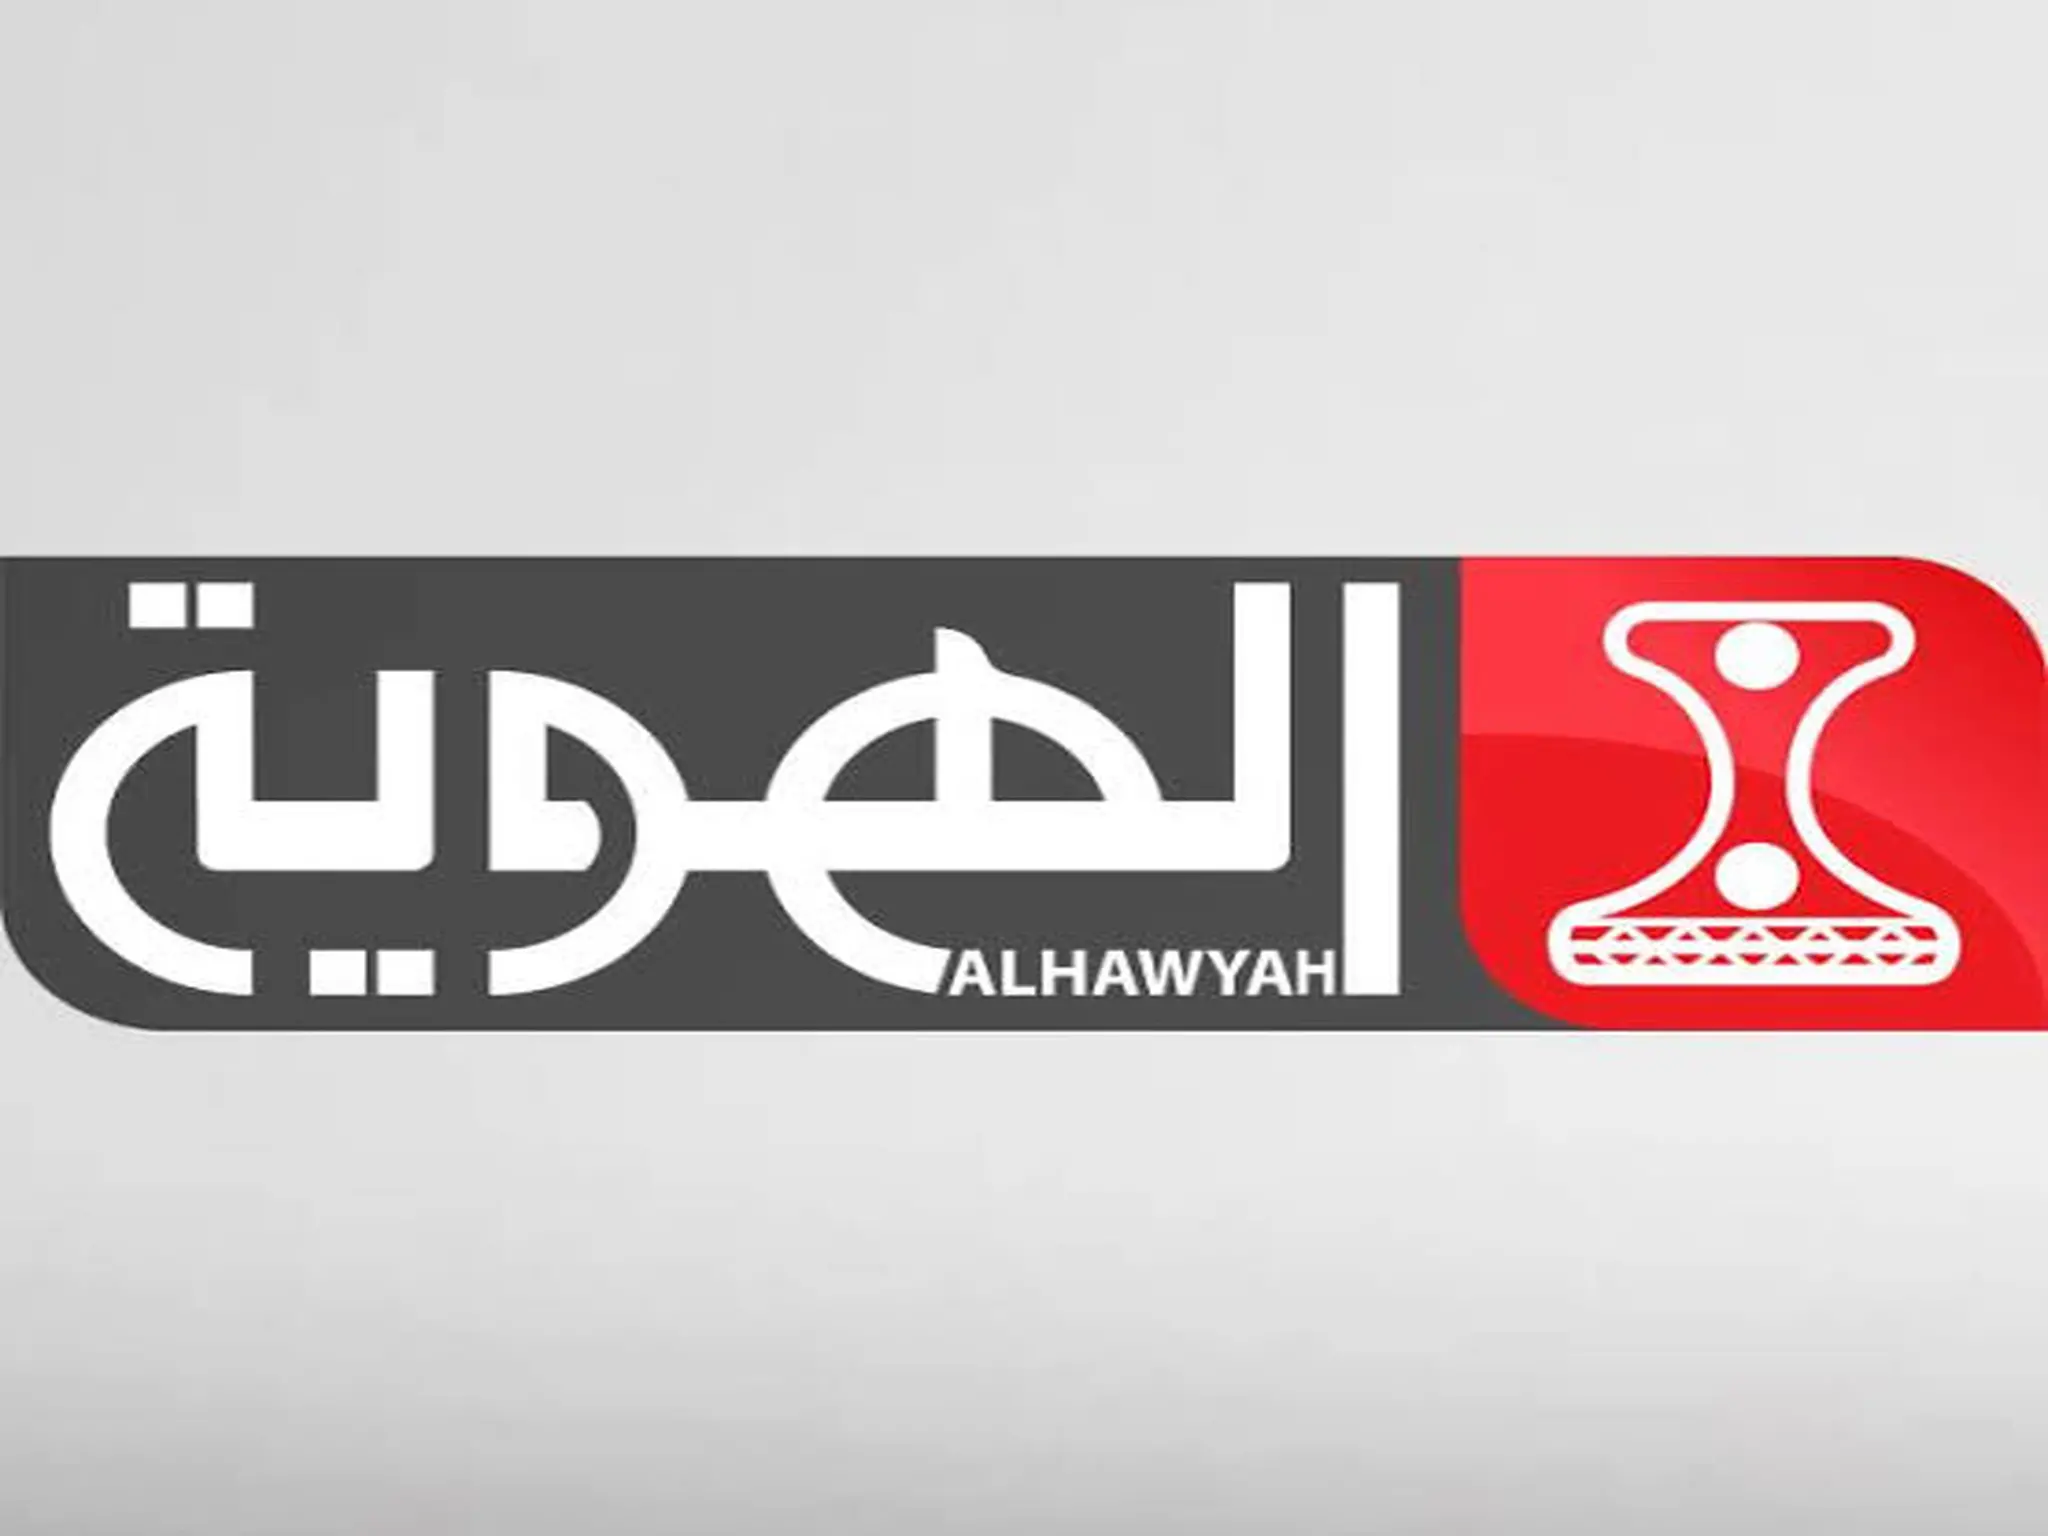 تردد قناة الهوية اليمنية Al Hawyah TV الناقلة لمباريات كأس العالم 2022